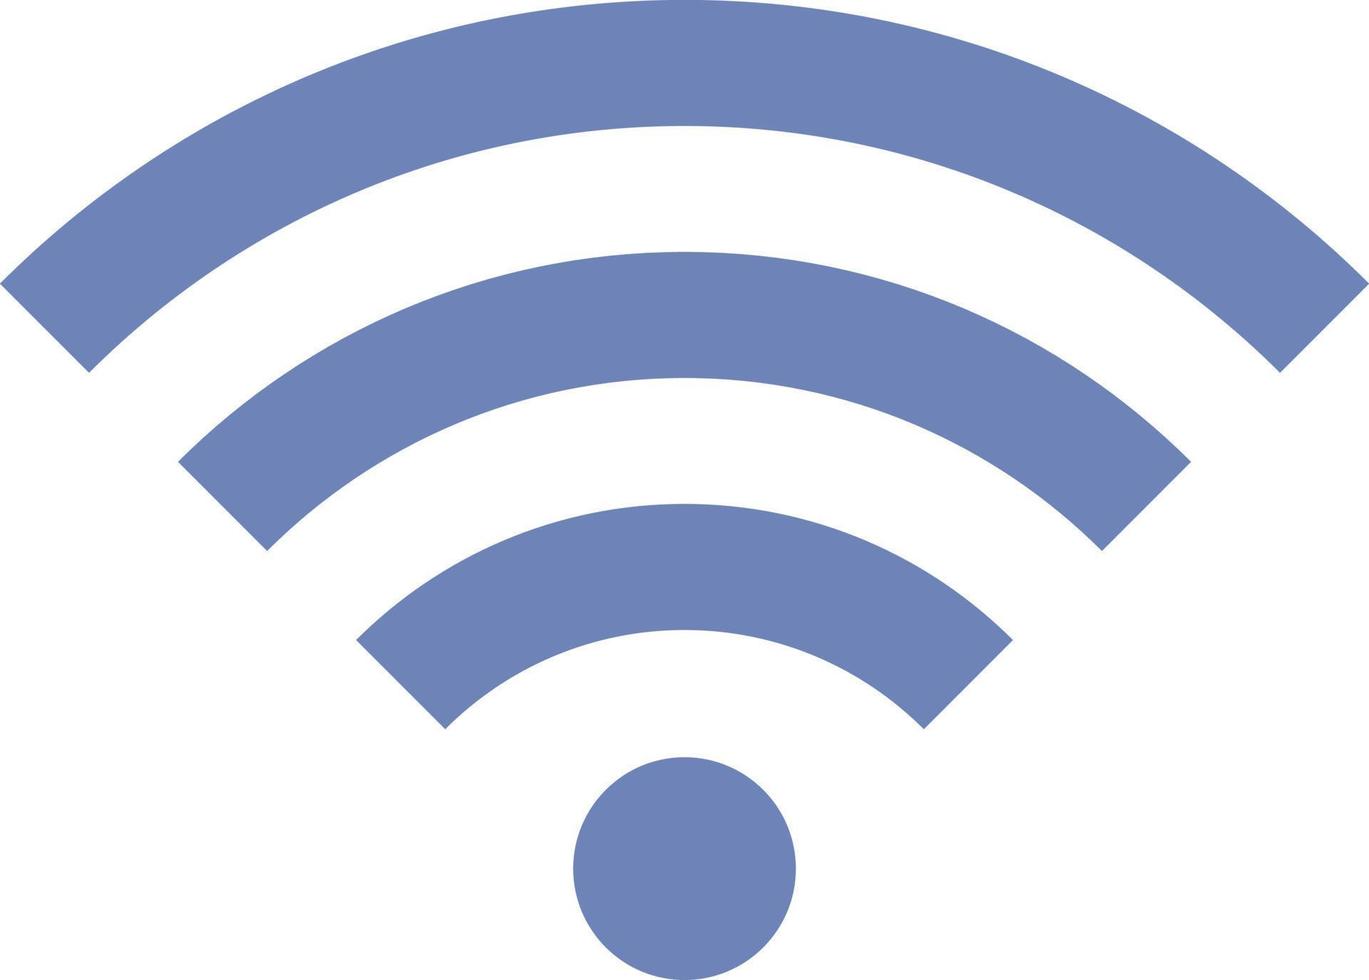 icono de señal wifi vector